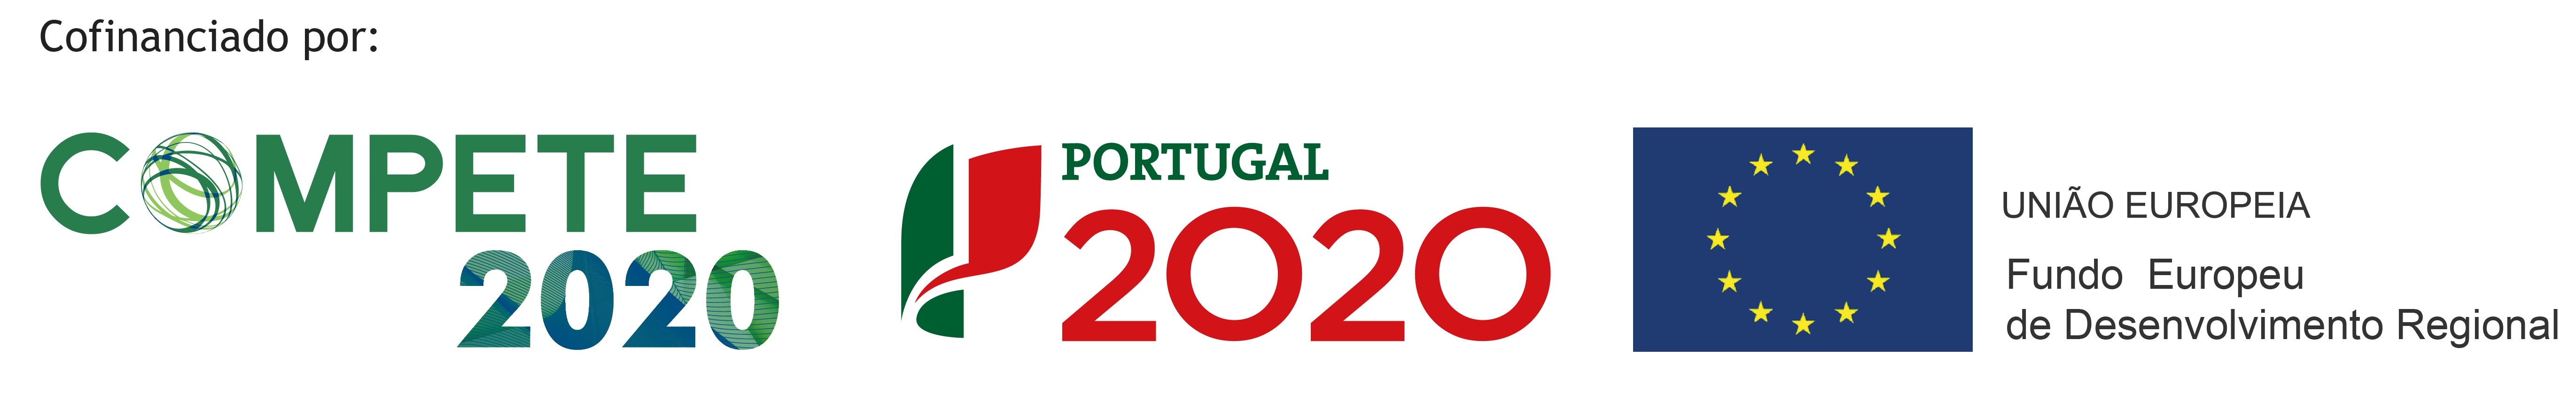 compete2020 portugal2020 União Europeia